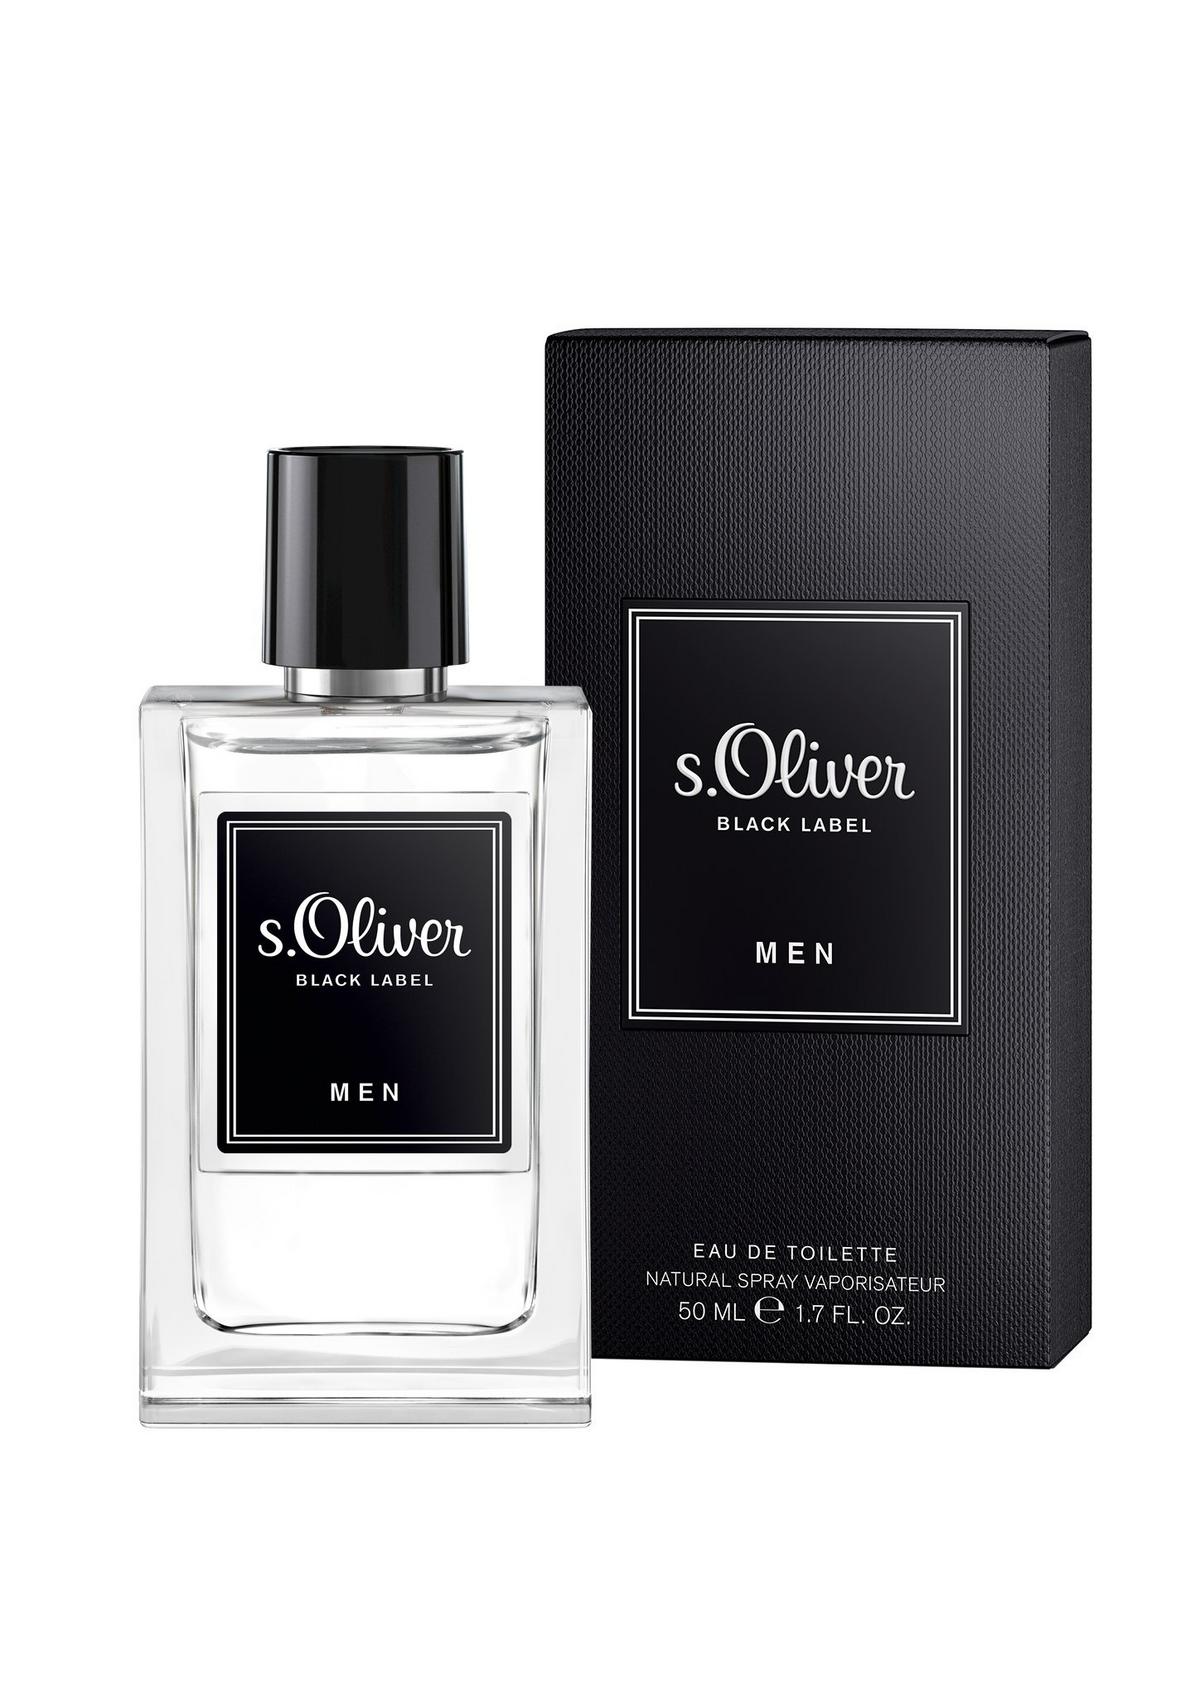 s.Oliver Black Label Men eau de toilette 50 ml